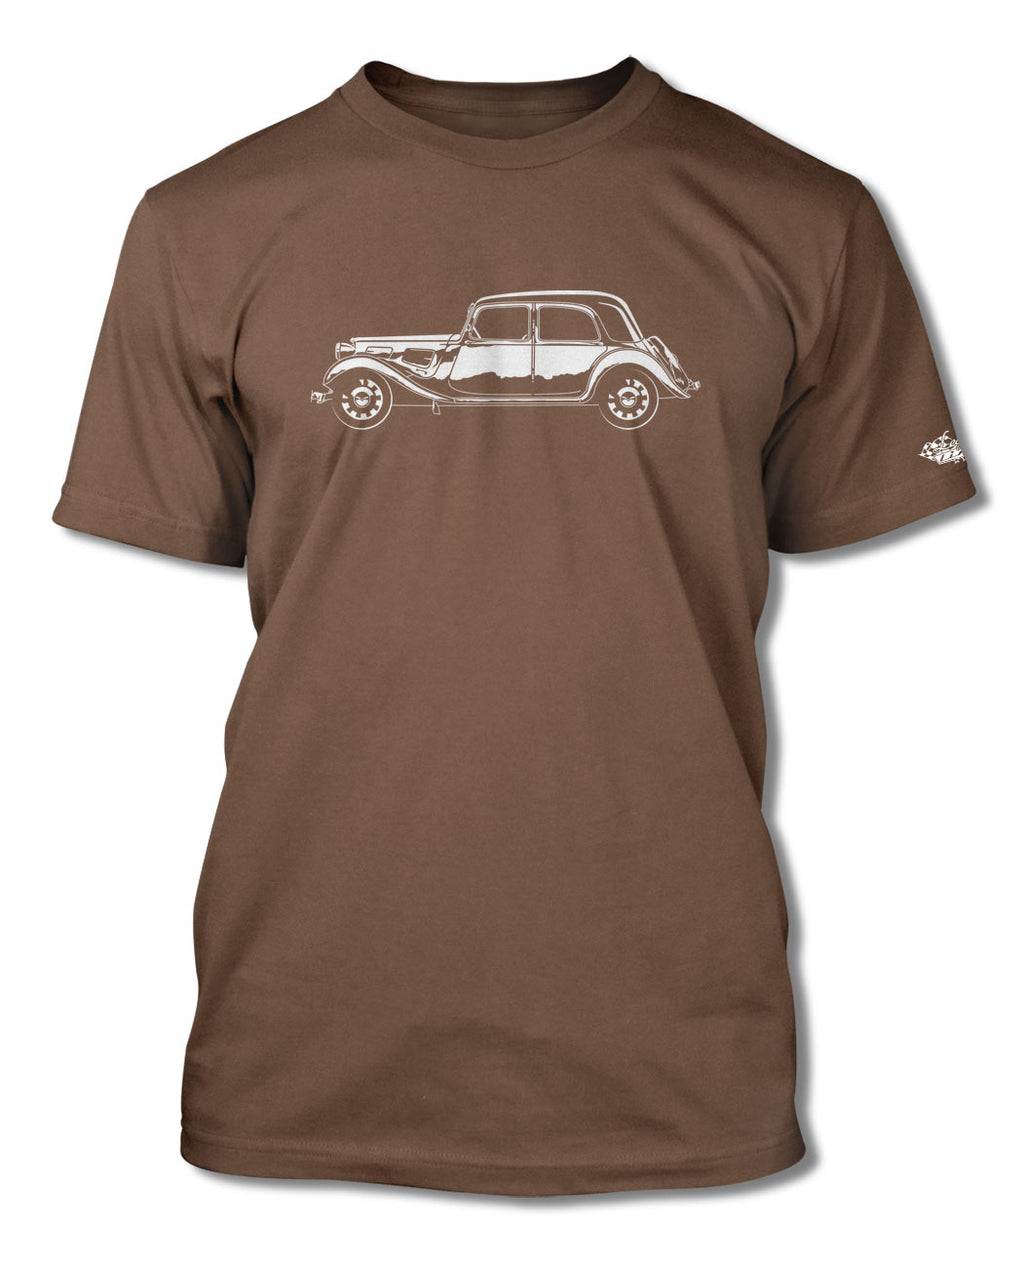 Citroen Traction Avant 11BL 1934 – 1957 T-Shirt - Men - Side View